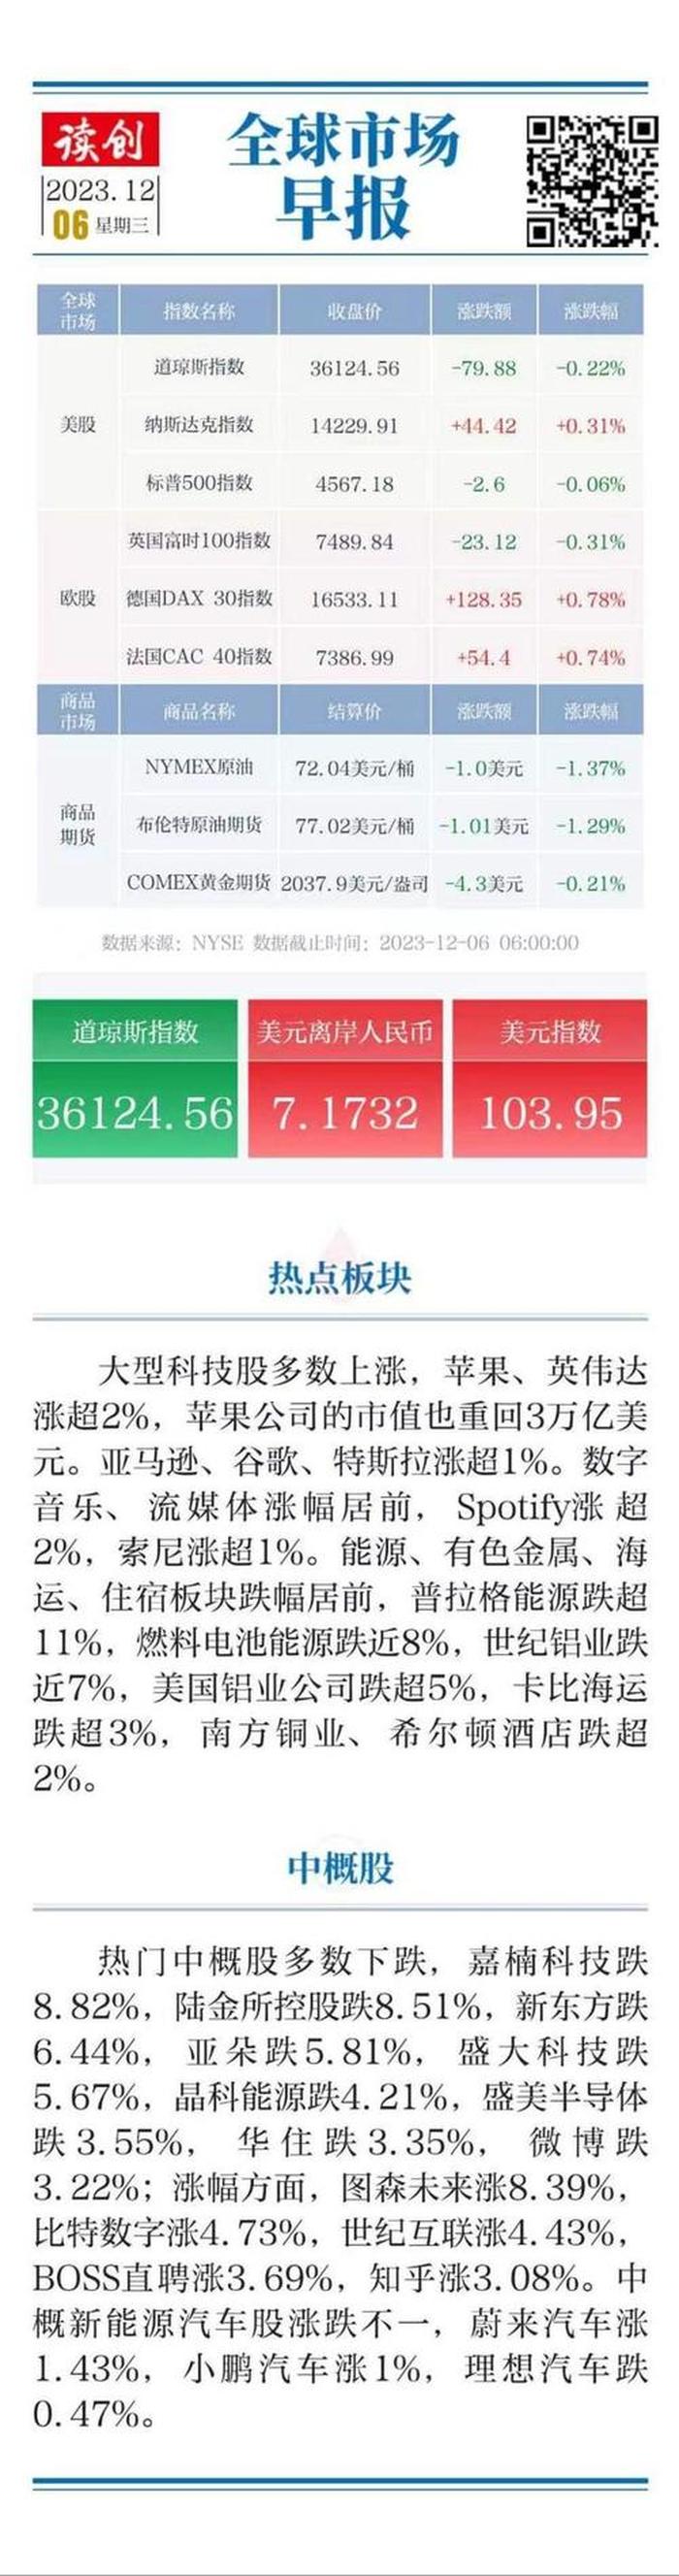 路透社中国股市今天最新消息 - 路透社预测中国股市